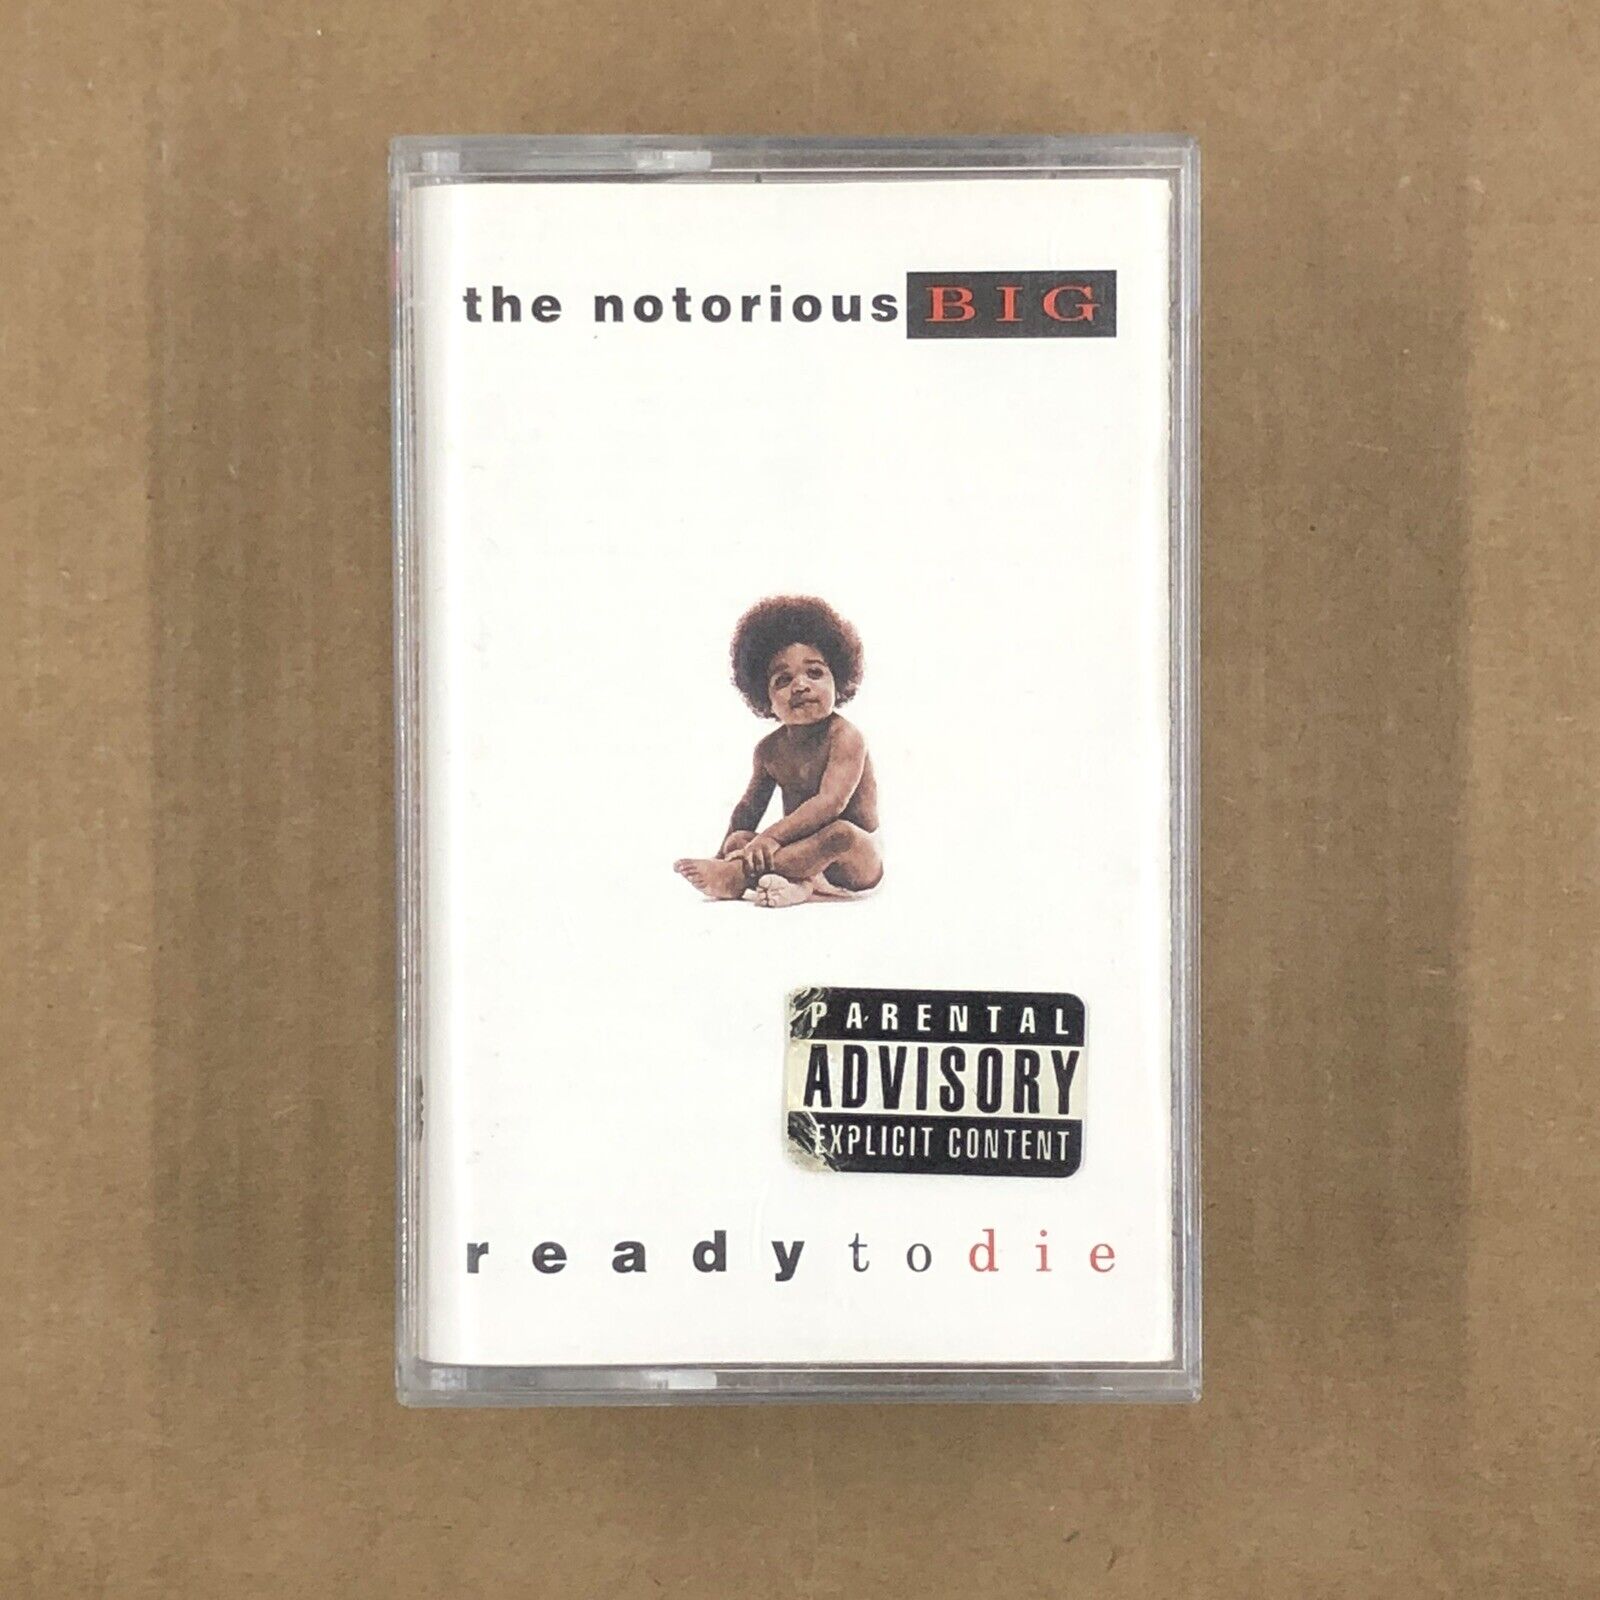 READY TO DIE Cassette Tape NOTORIOUS BIG 1994 90s Rap Hip Hop VINTAGE